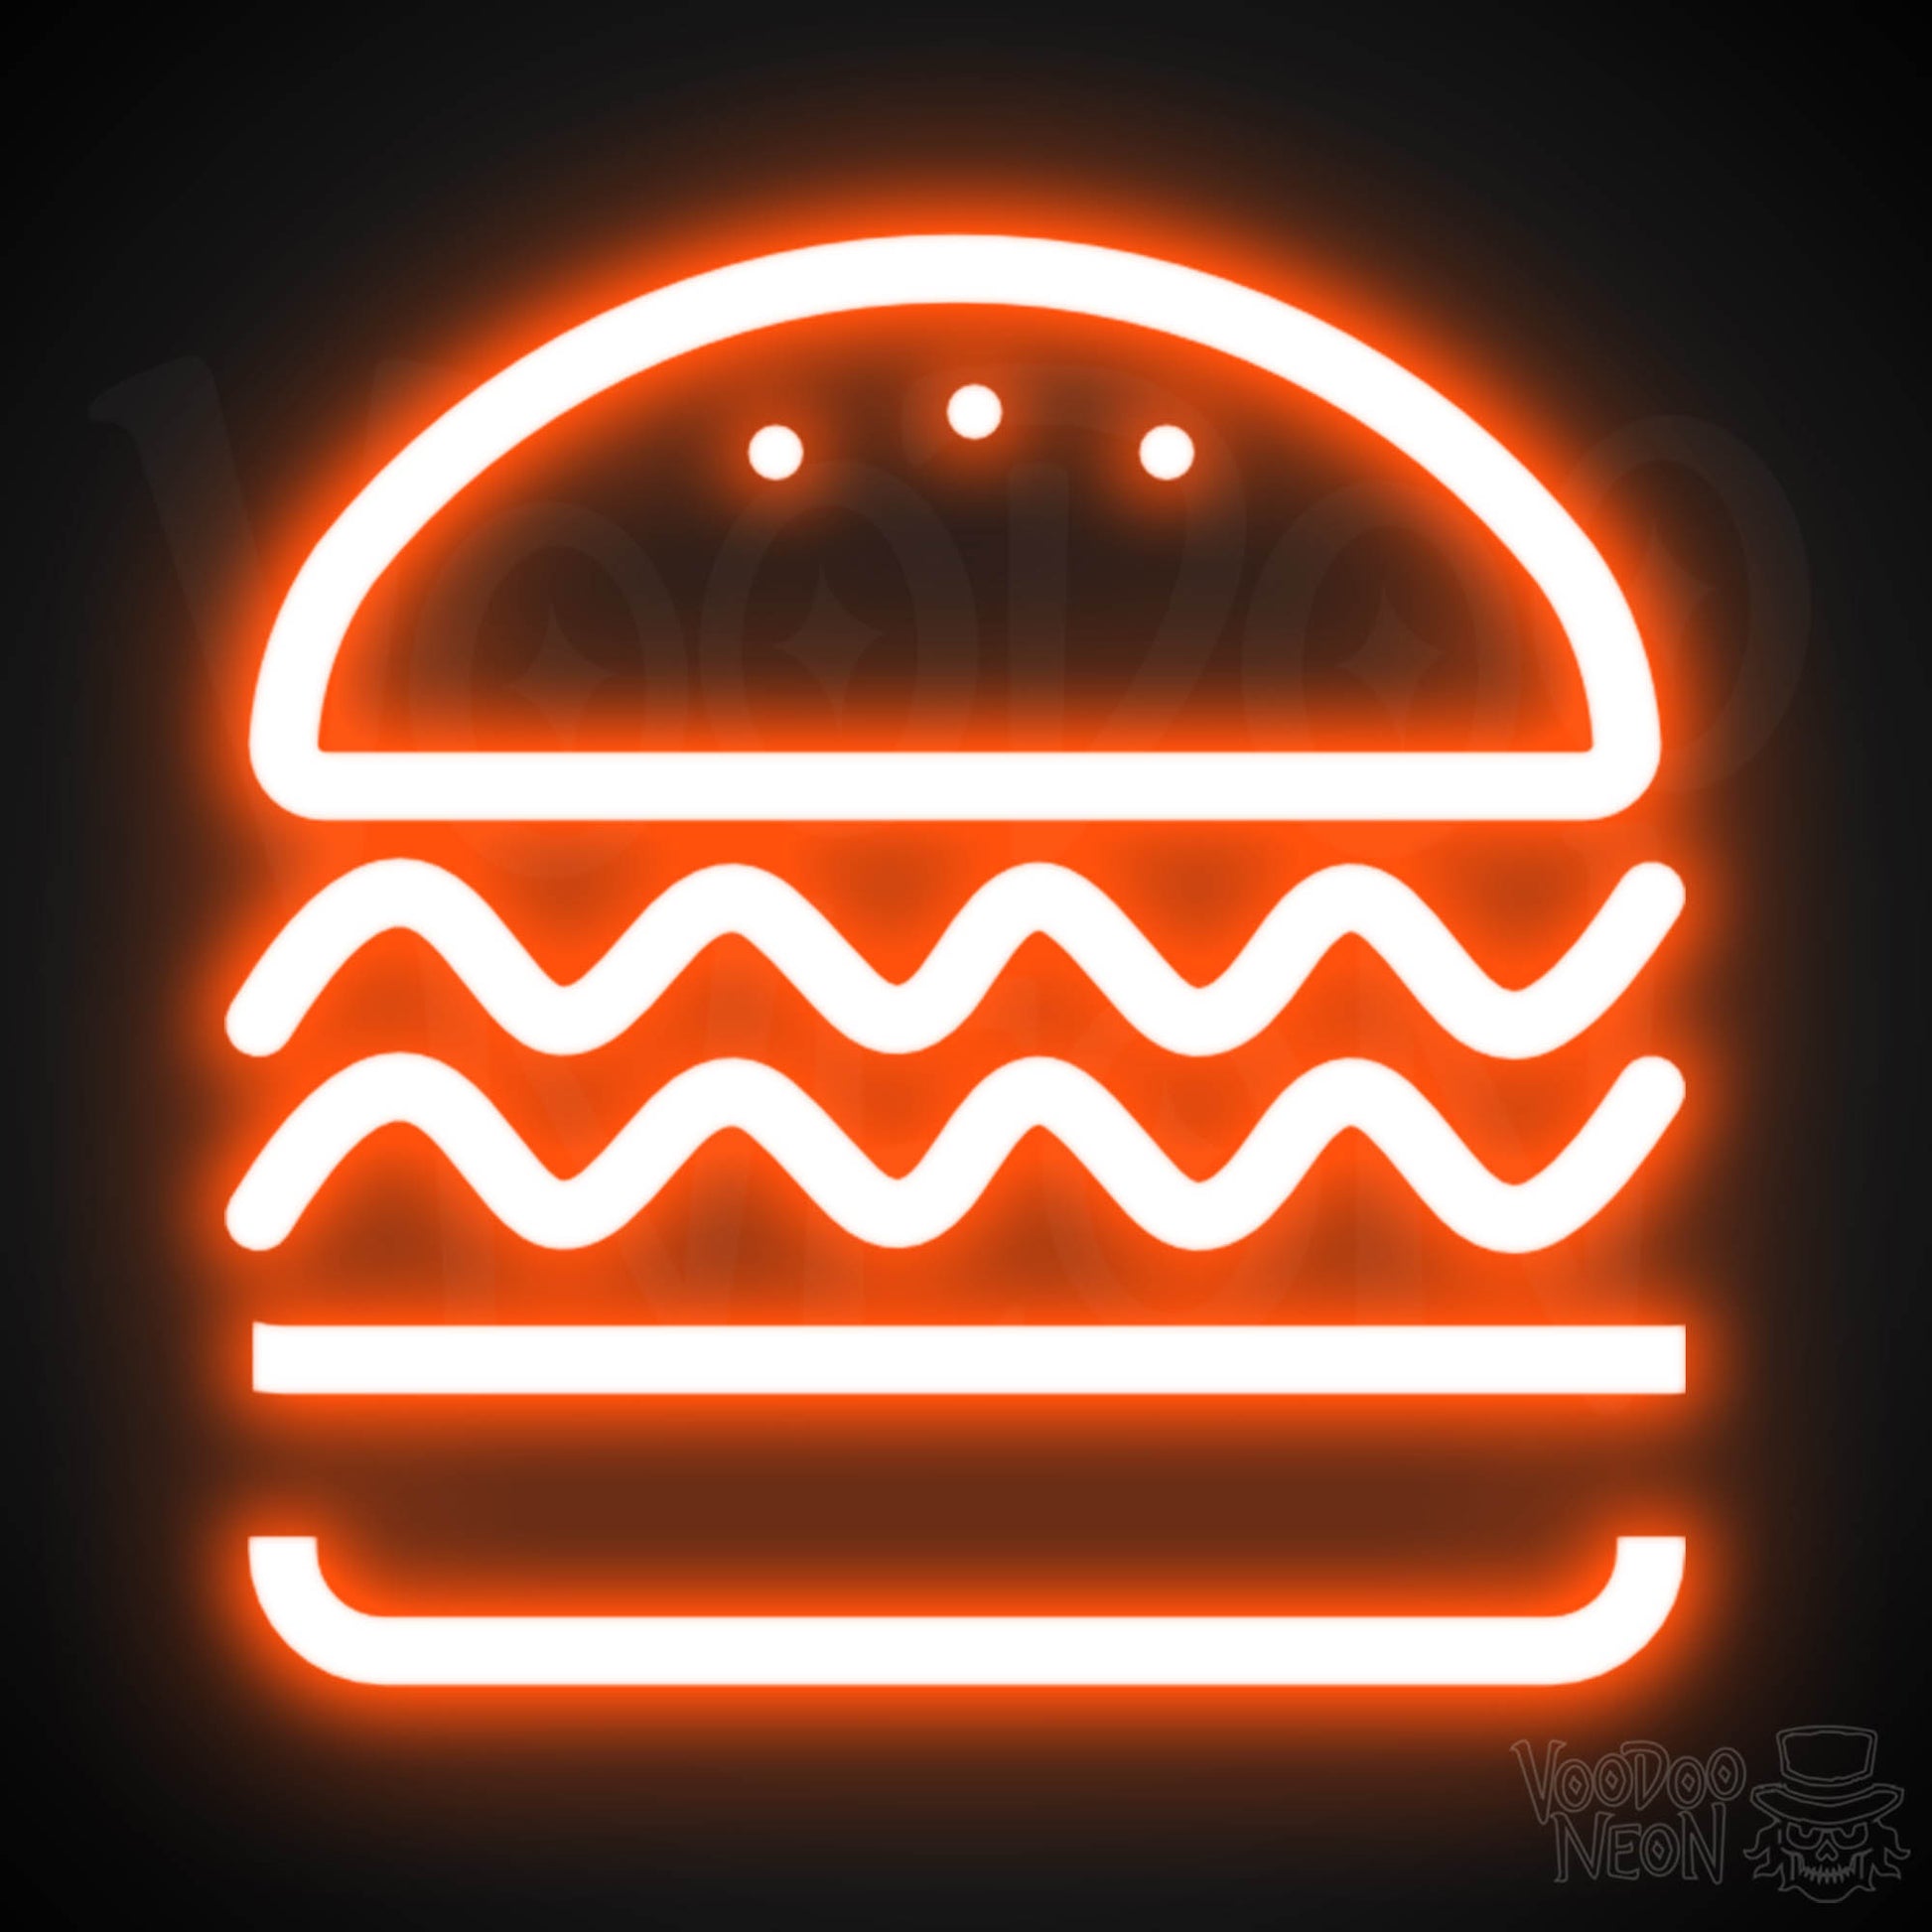 Neon Burger Sign - Burger LED Neon Sign - Color Orange